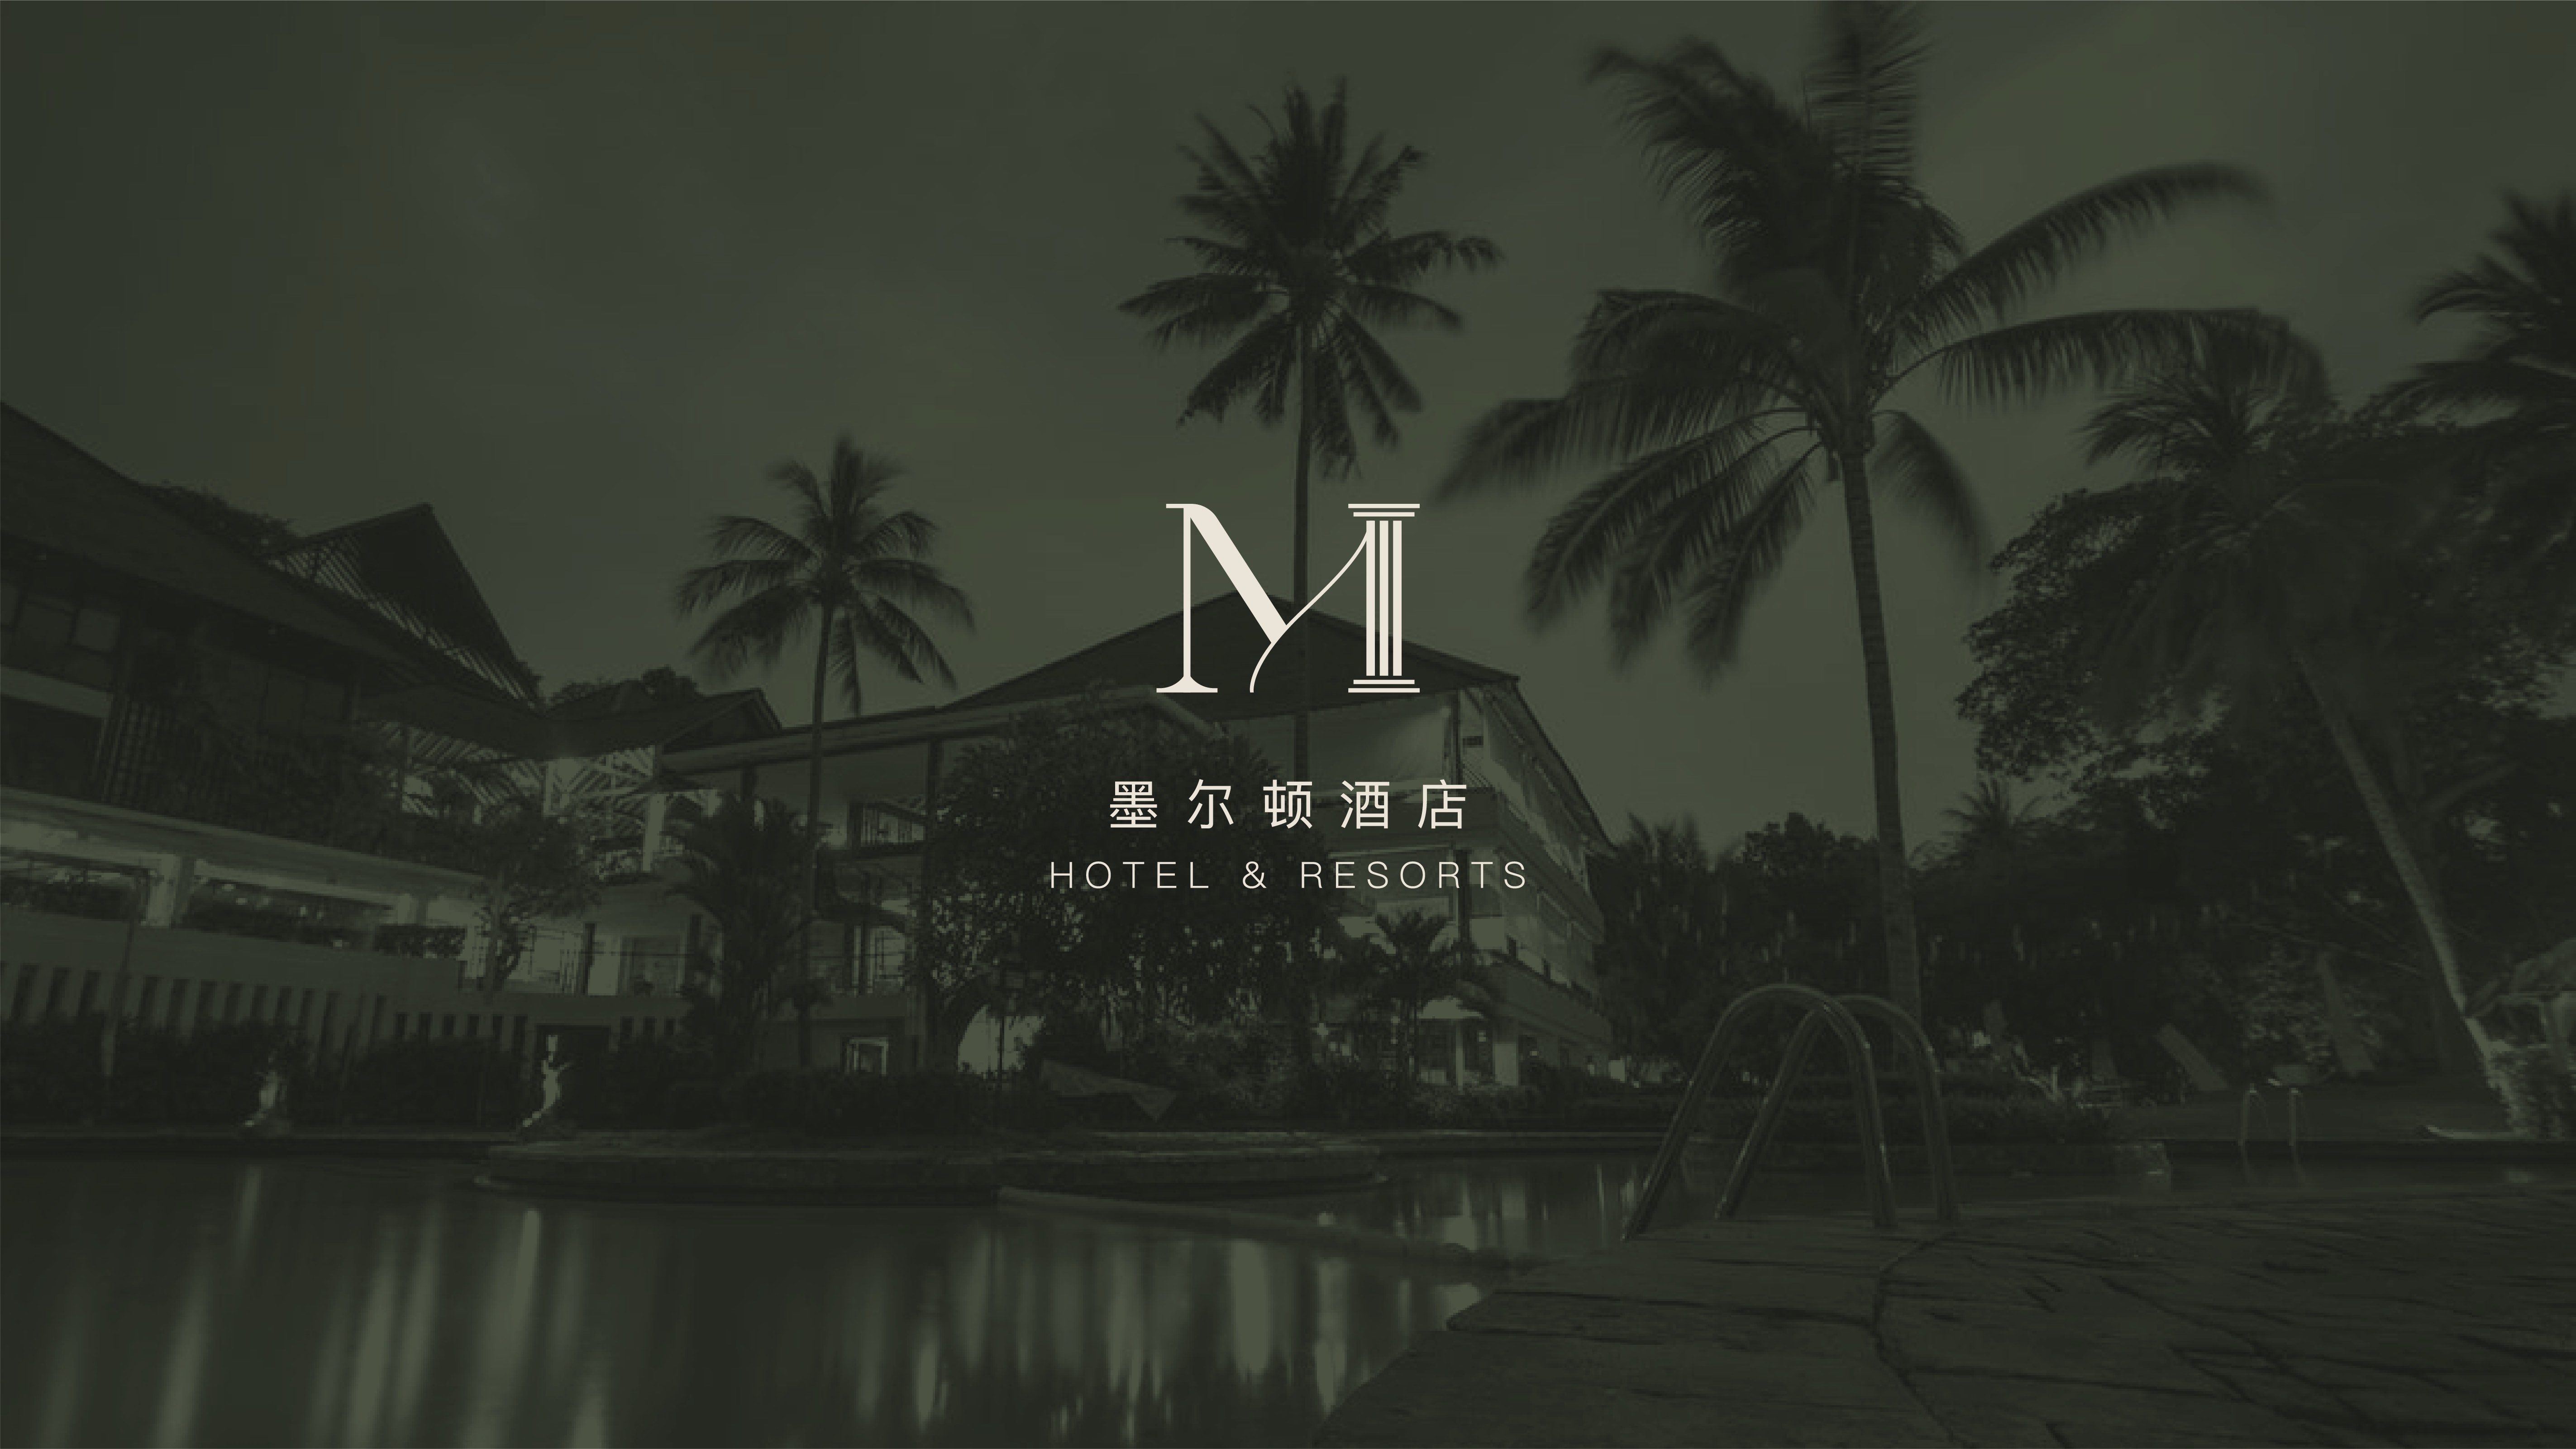 酒店品牌设计-墨尔顿酒店-达岸品牌营销咨询